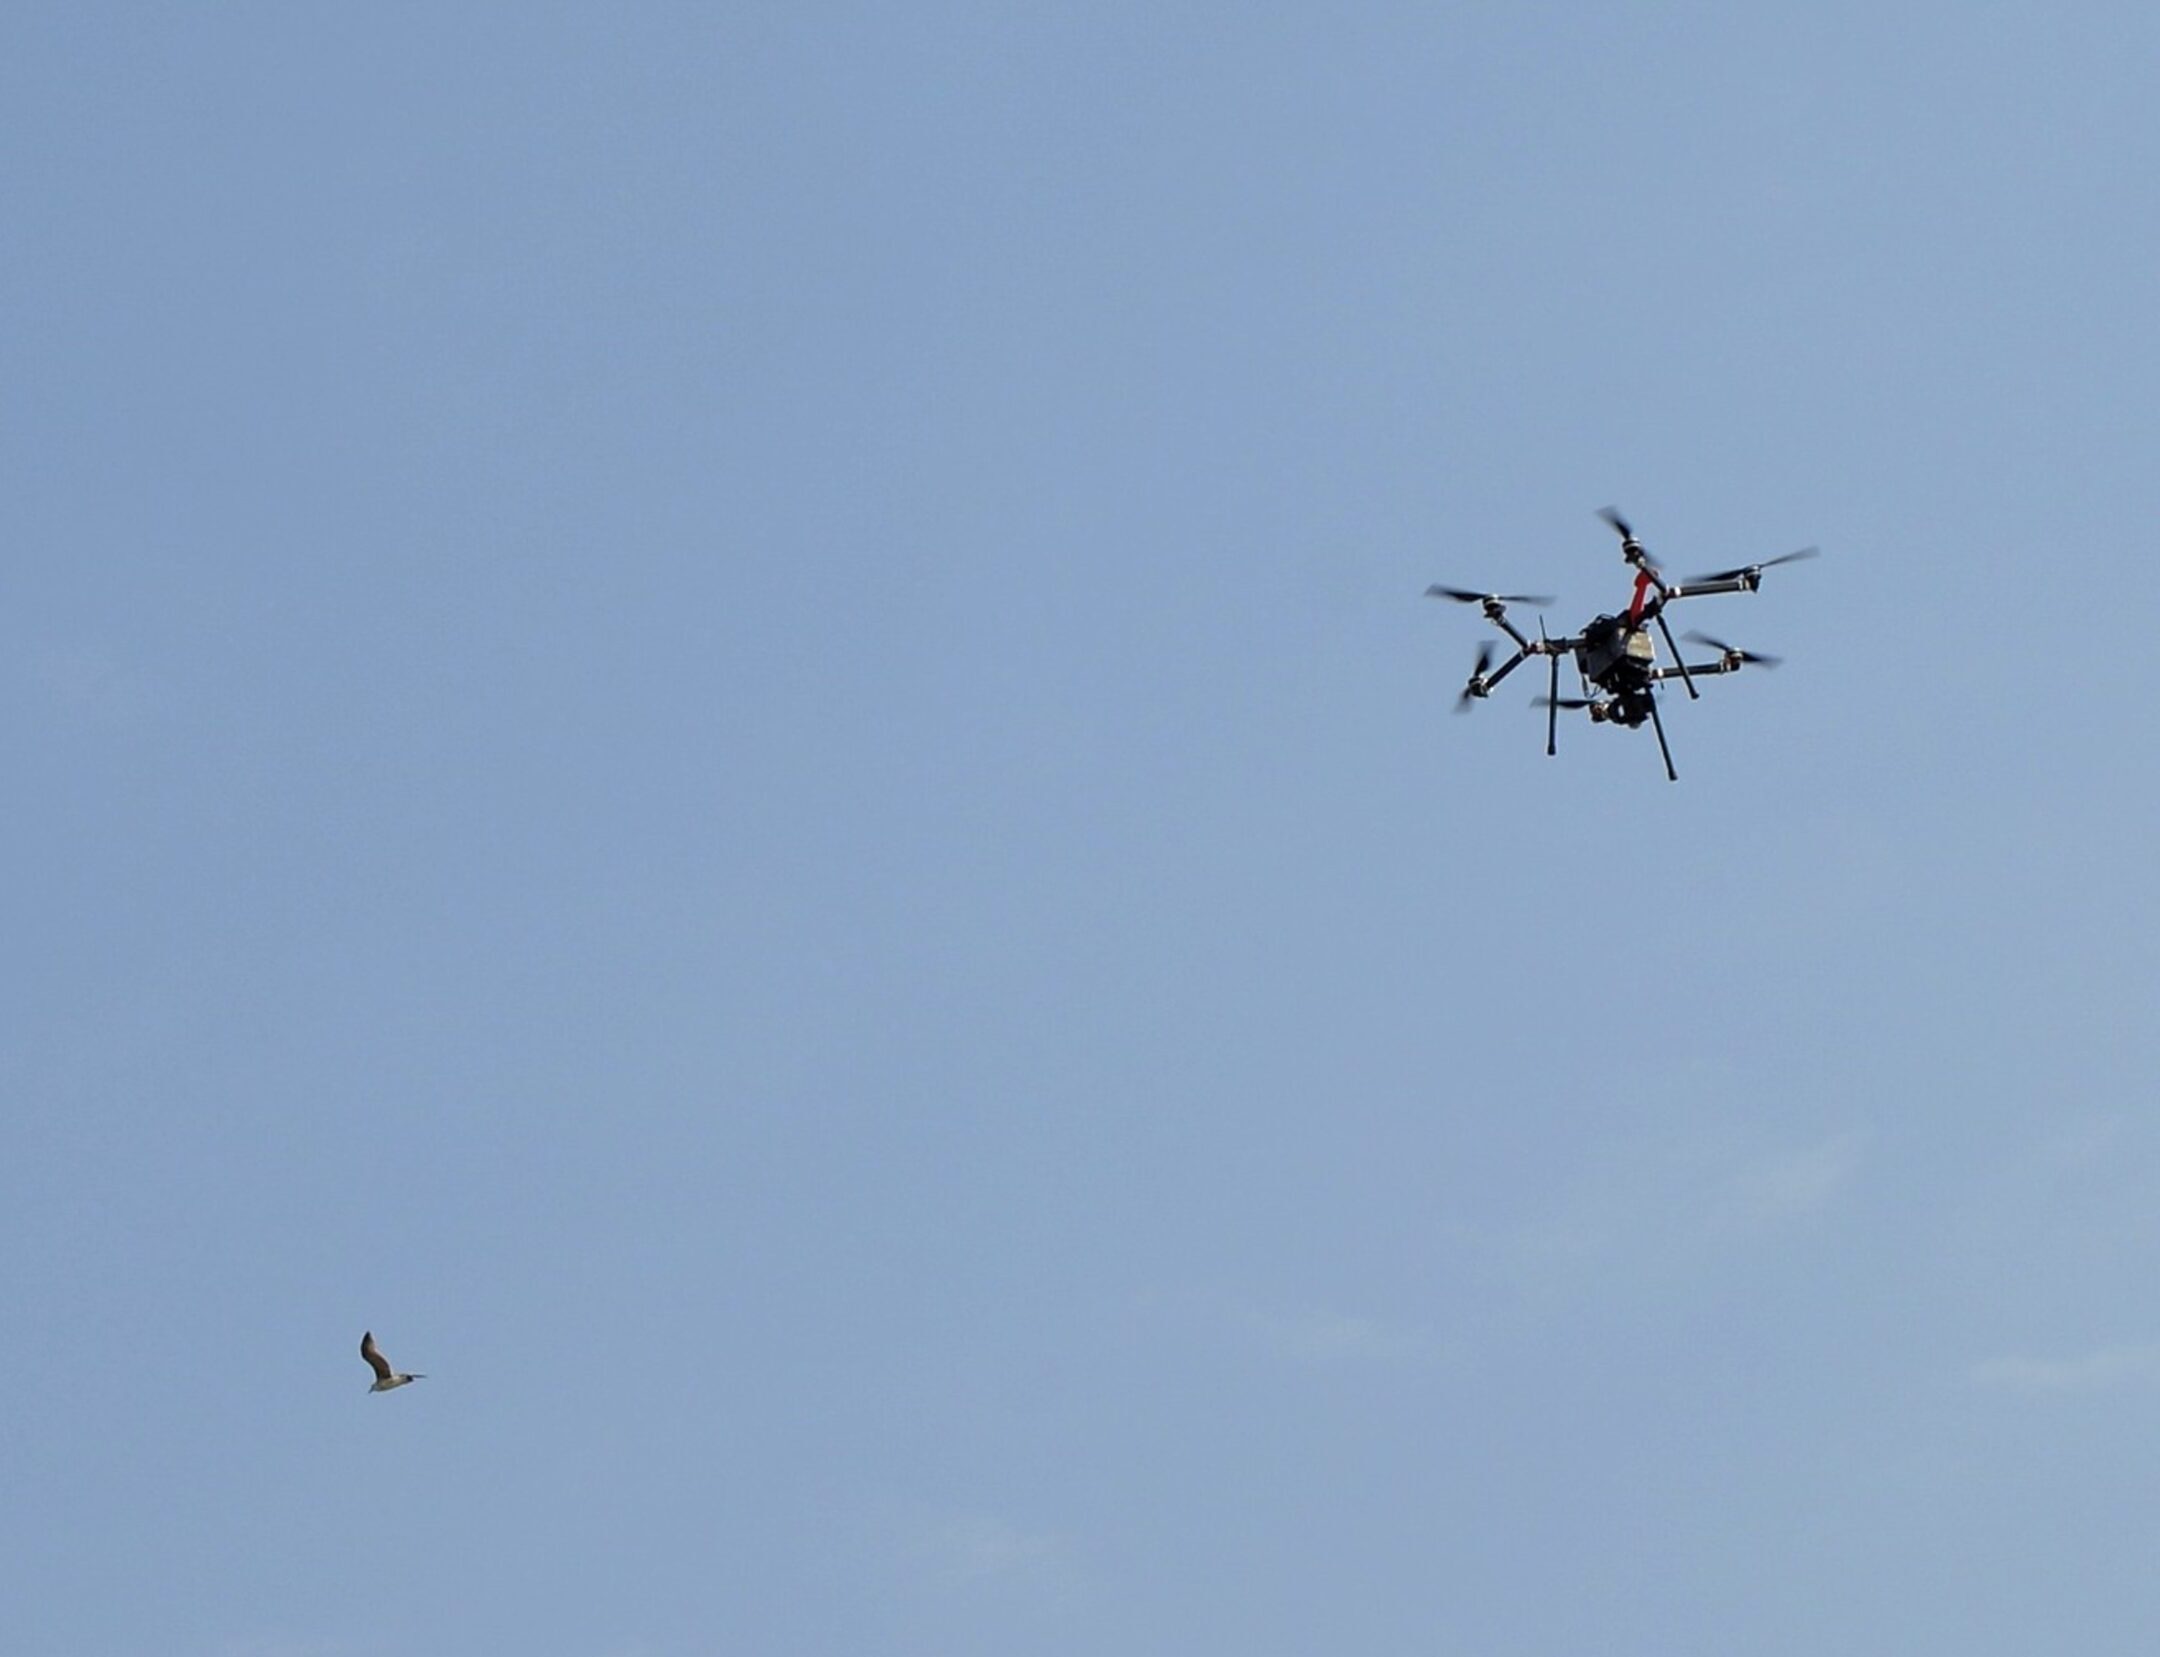 Consegnavano droghe e cellulari in carcere con i droni: 4 arresti